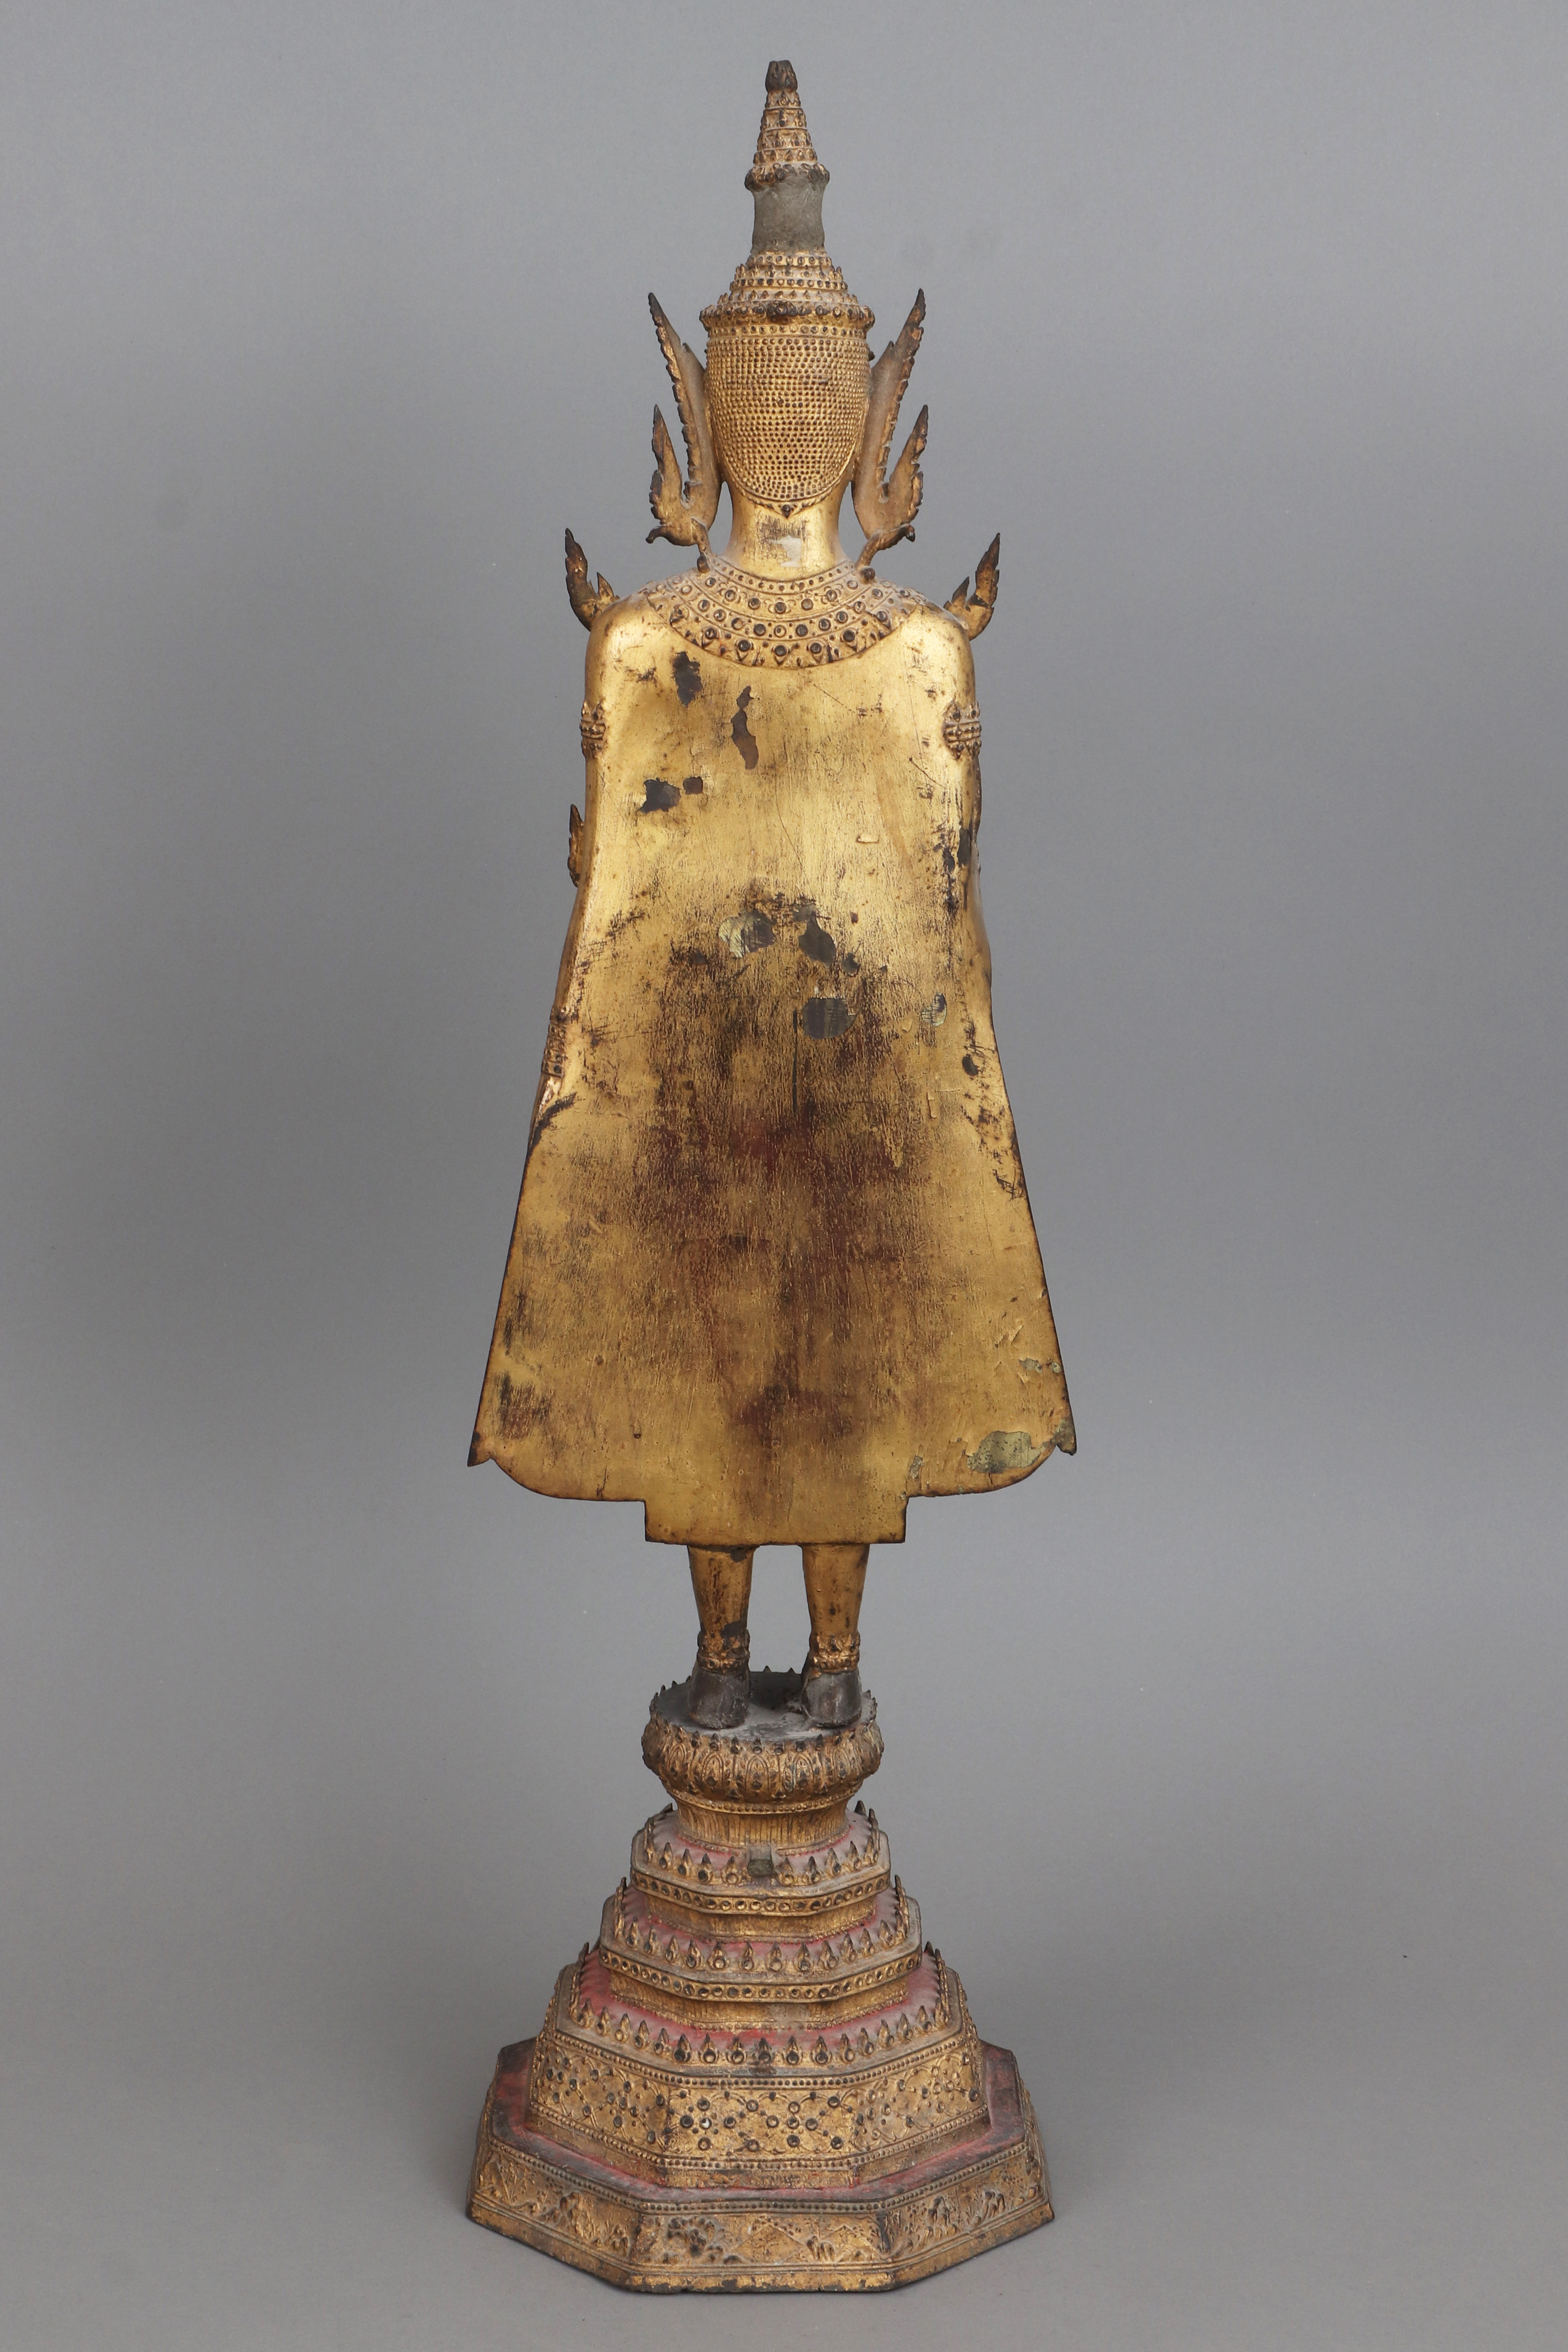 Thailändische Buddhafigur ¨Rattanakosin¨ - Image 2 of 4